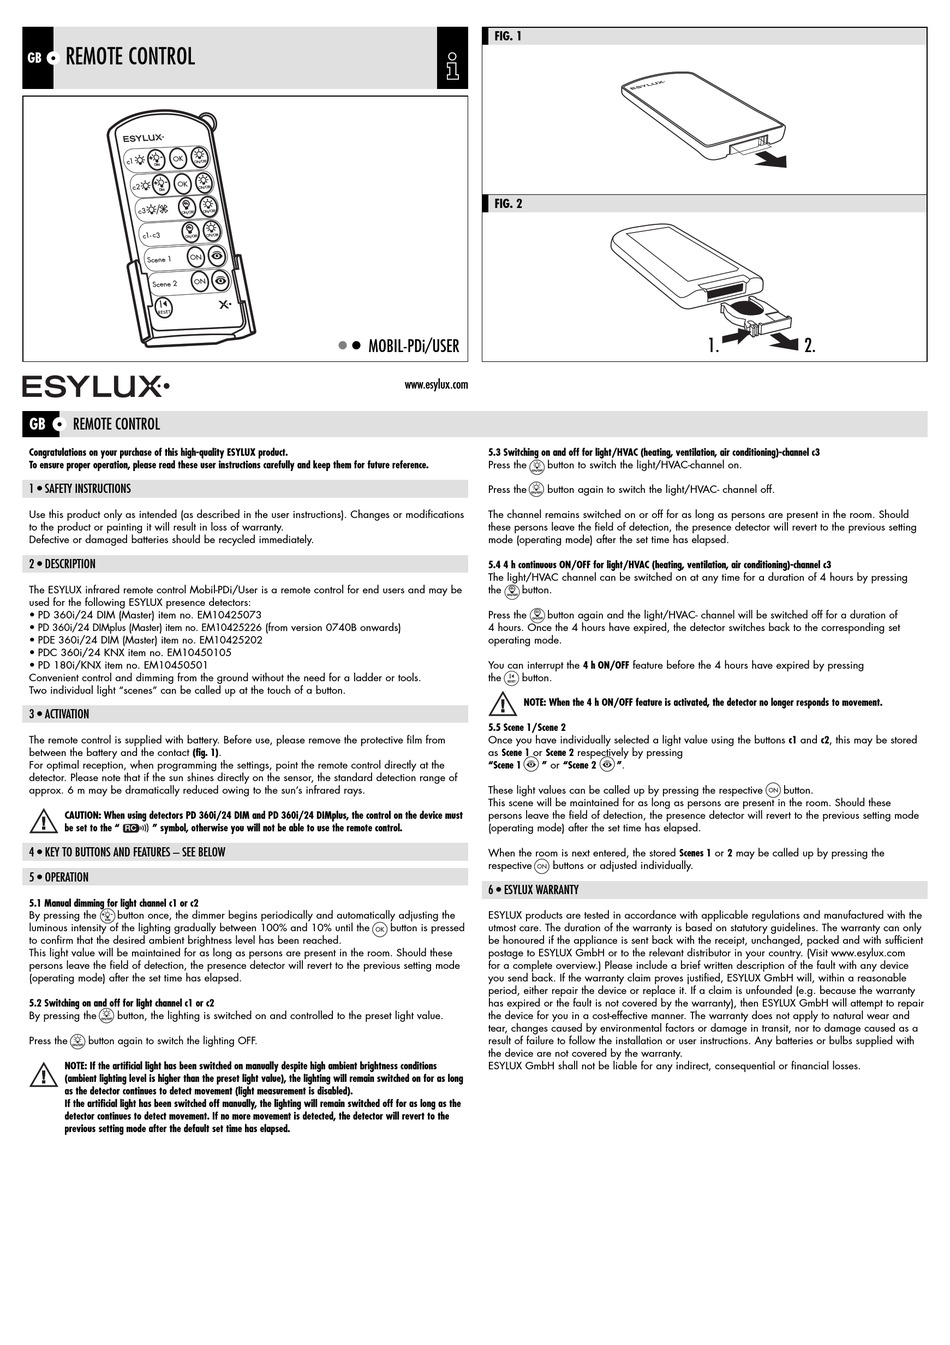 Kalkun Uplifted Lyrical ESYLUX MOBIL-PDI/USER REMOTE CONTROL MANUAL | ManualsLib